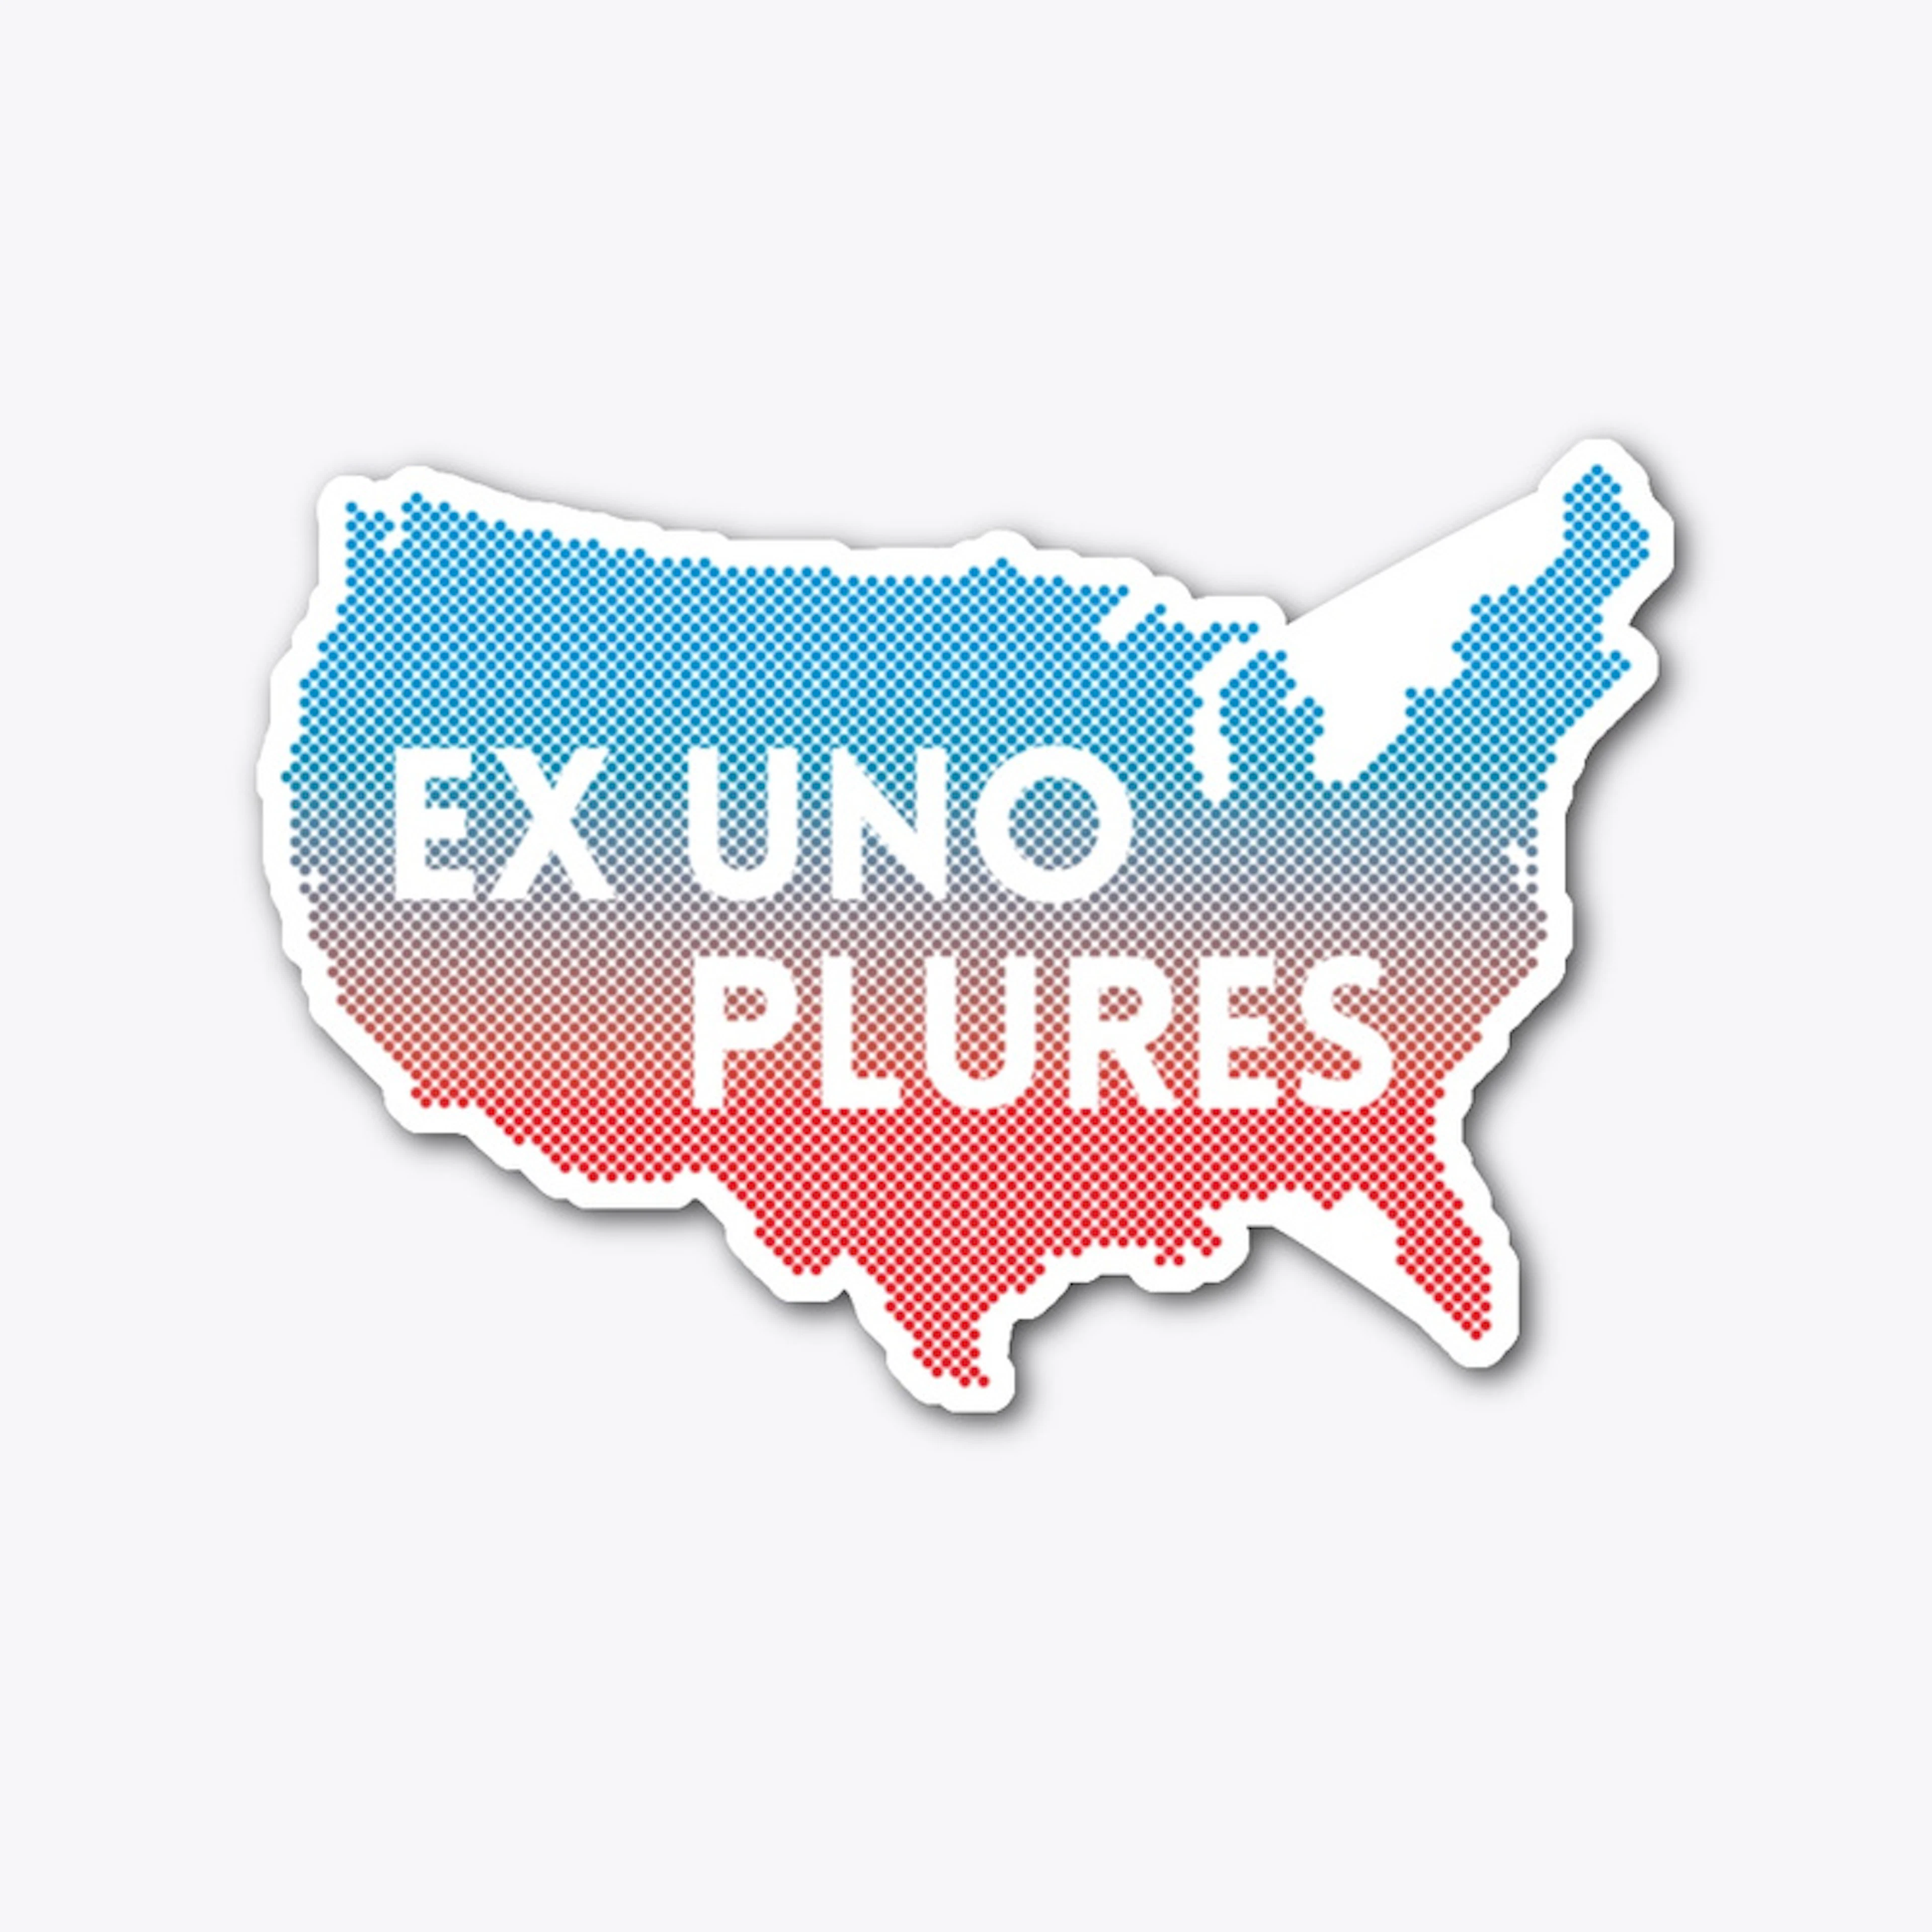 Ex Uno Plures